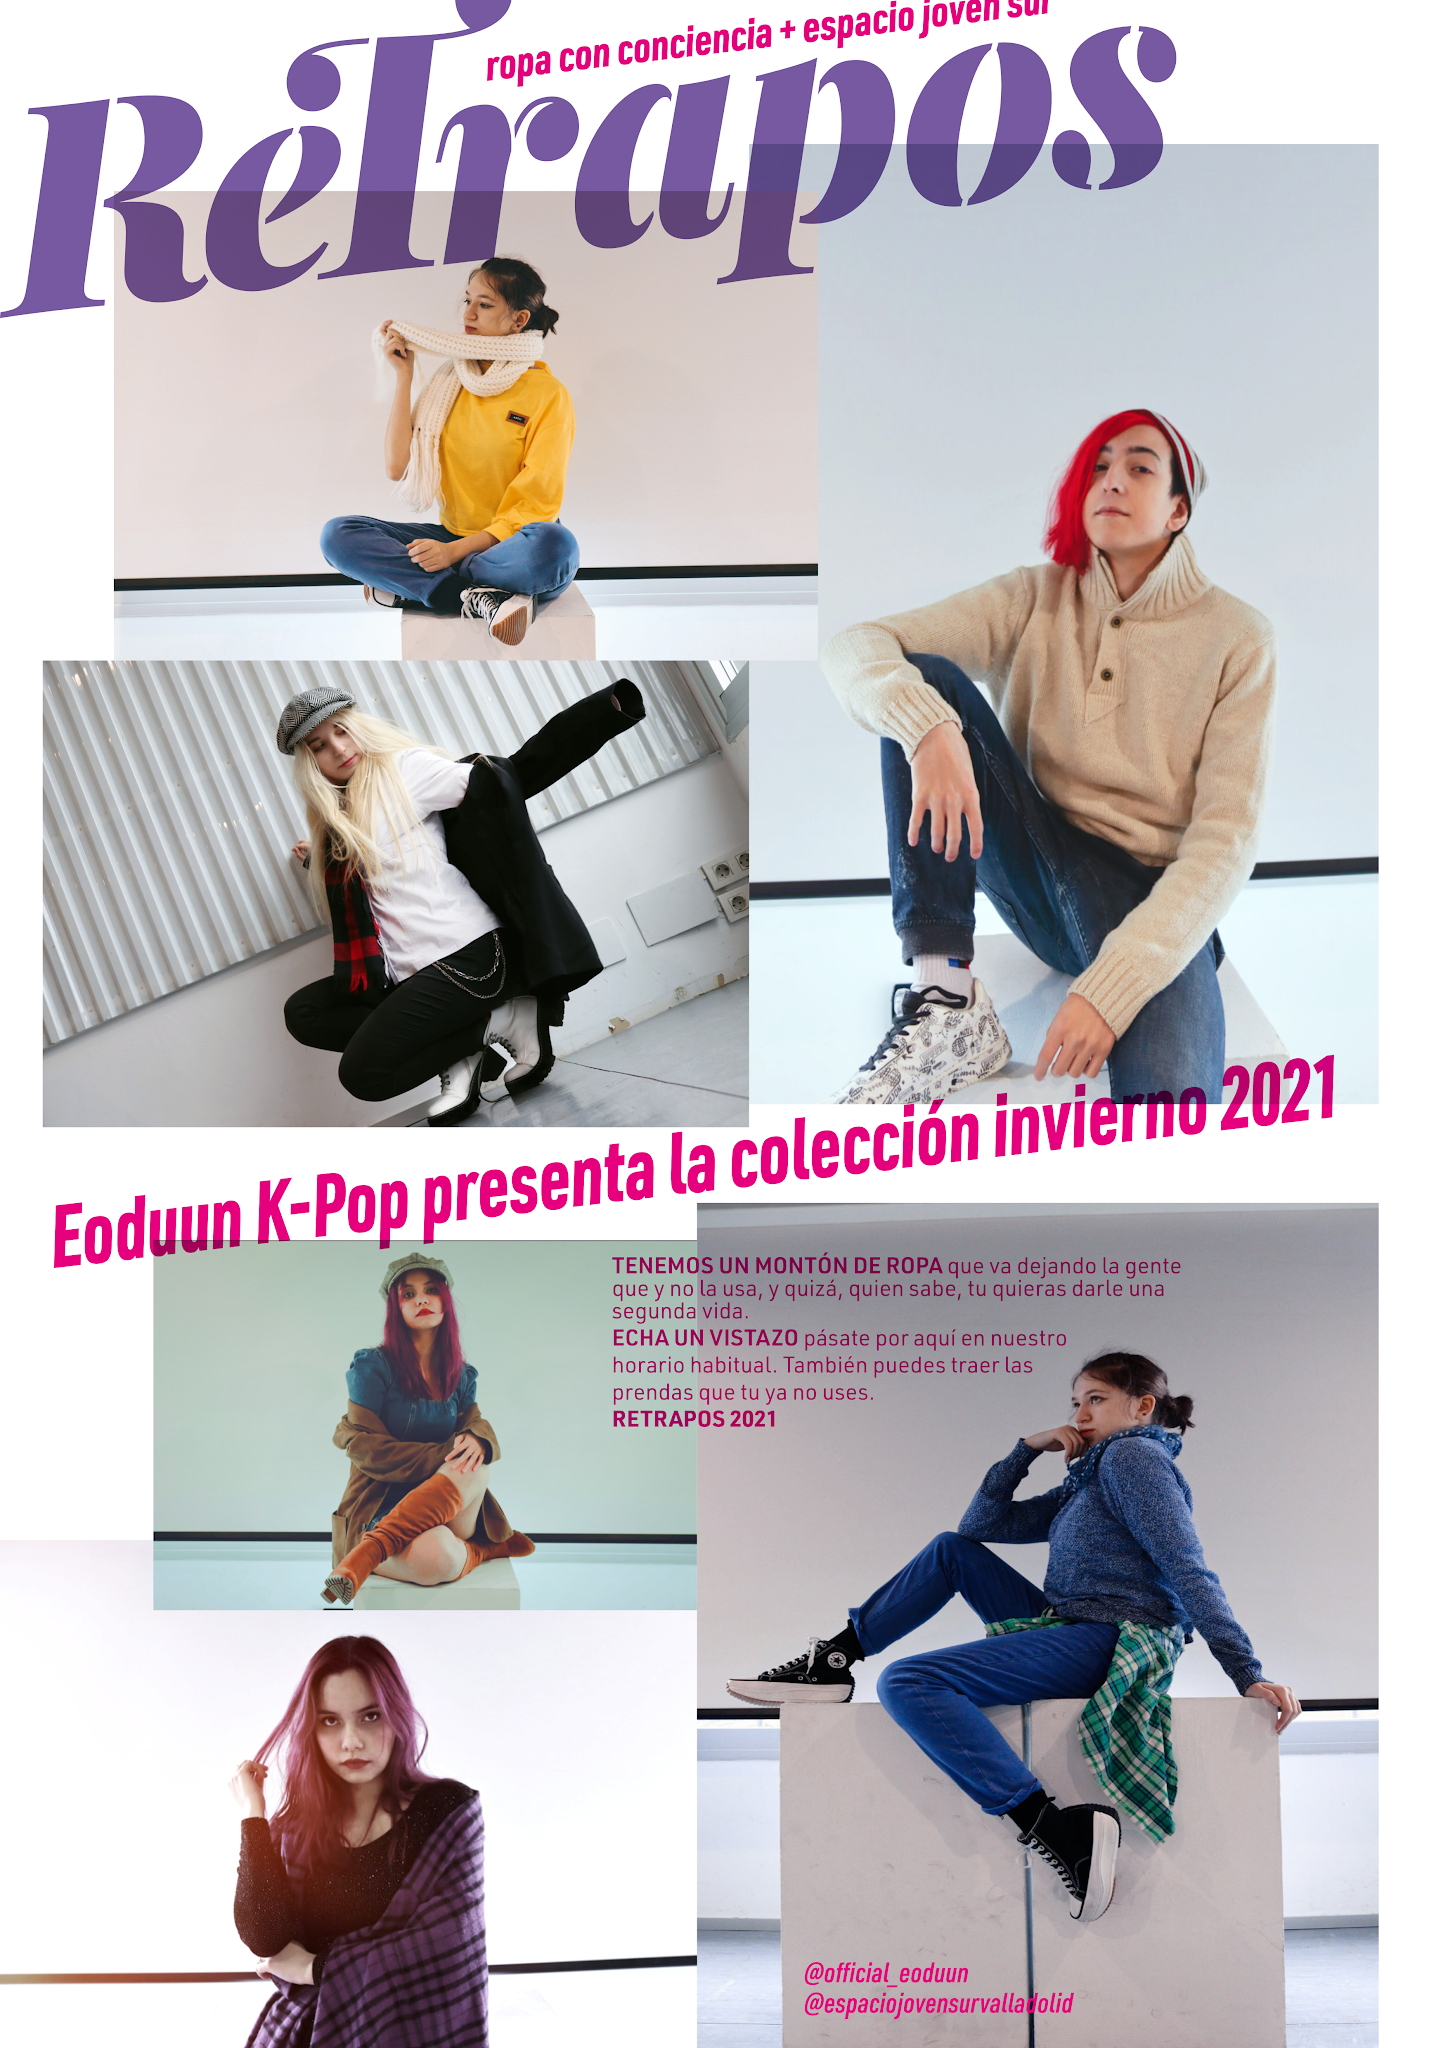 Eoduun Kpop presenta la colección Re-Trapos invierno 2021